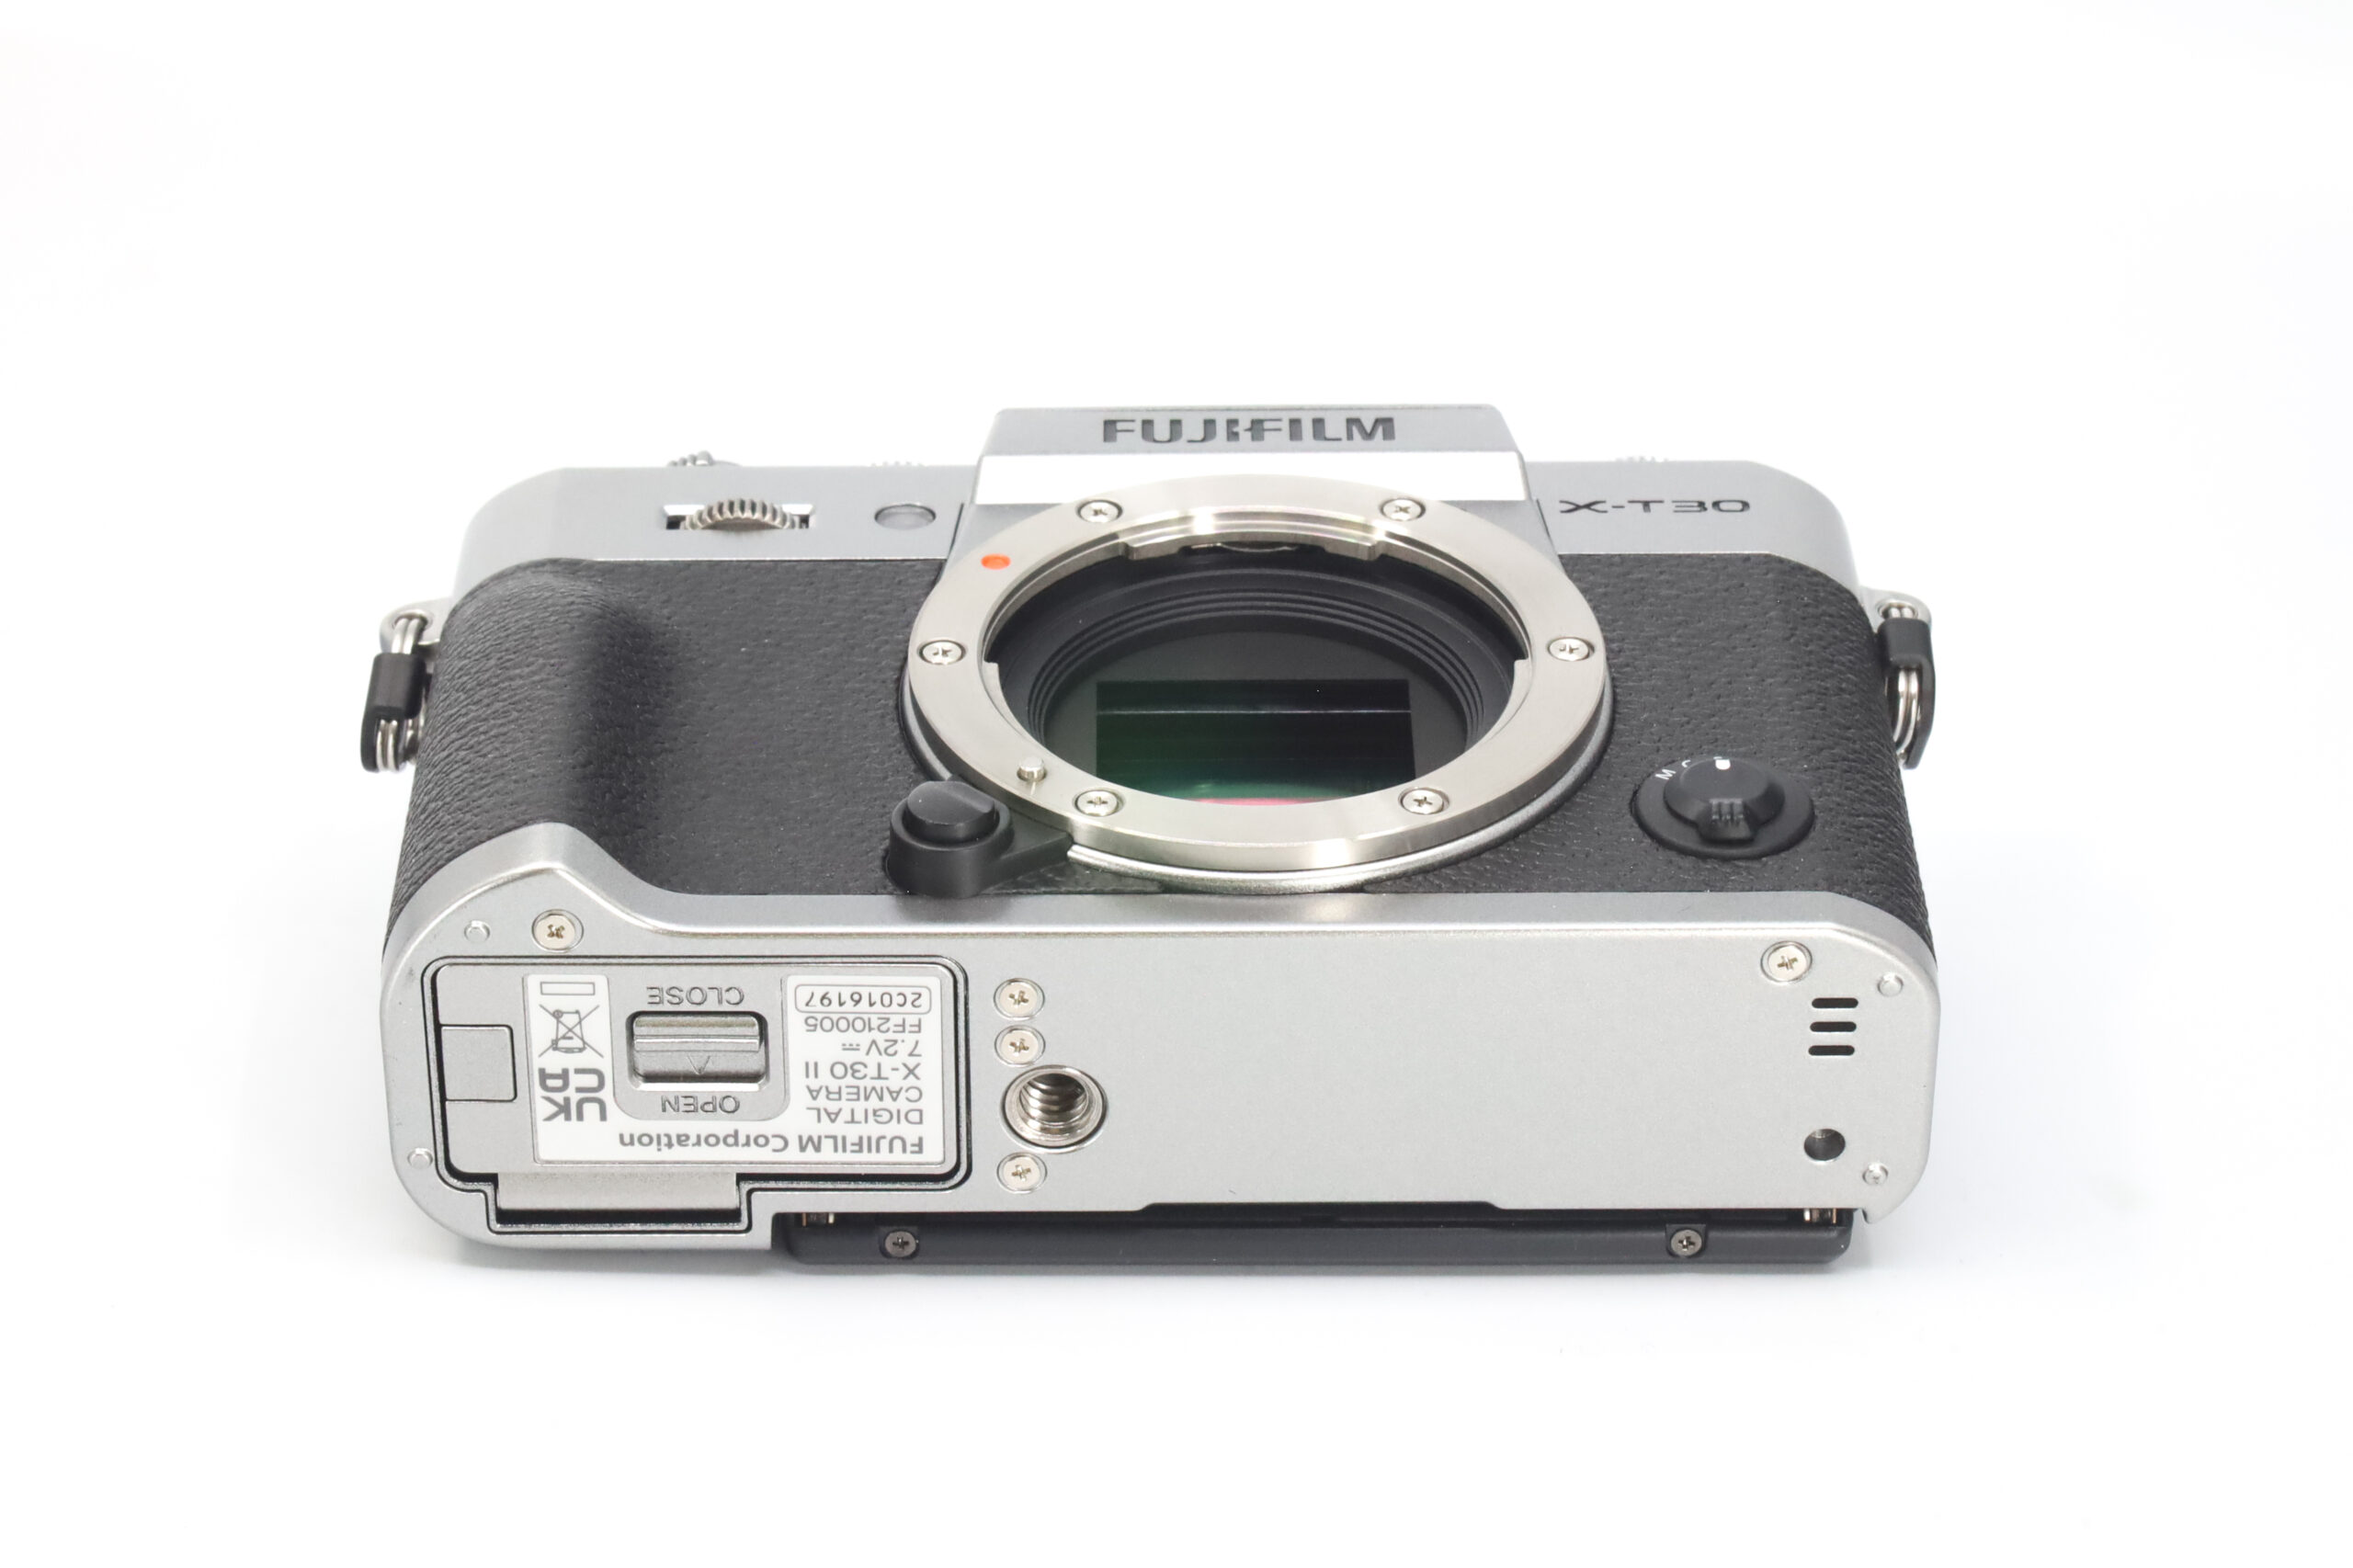 Fujifilm Camera Accessories XT30 & XT30 II - BEST UPGRADES 